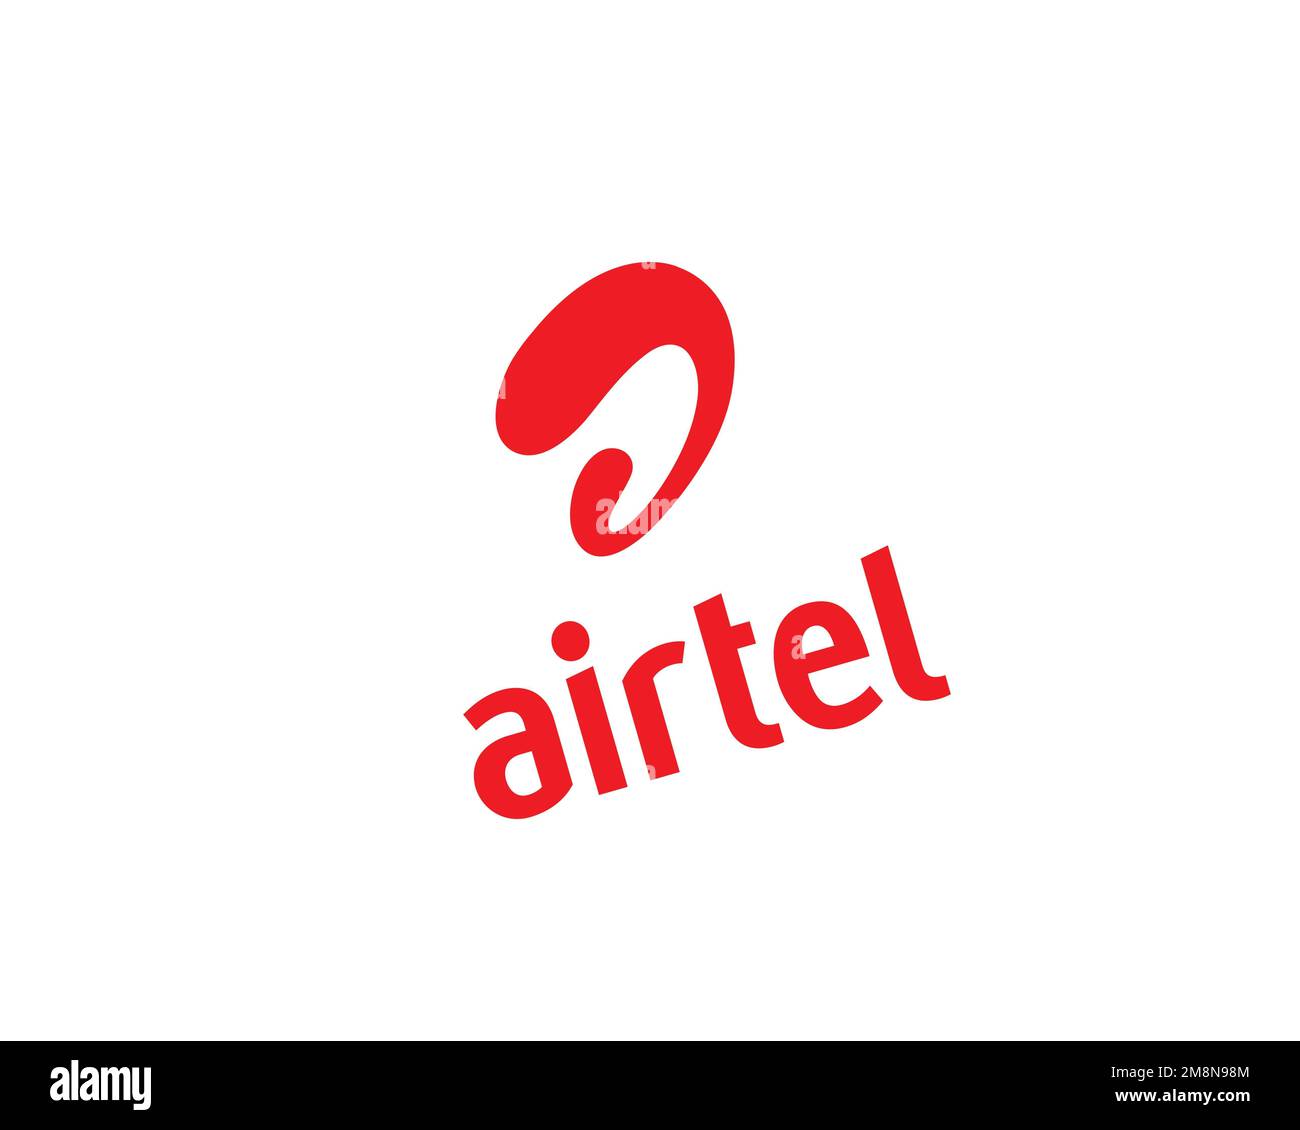 Bharti Airtel, rotated logo, white background Stock Photo